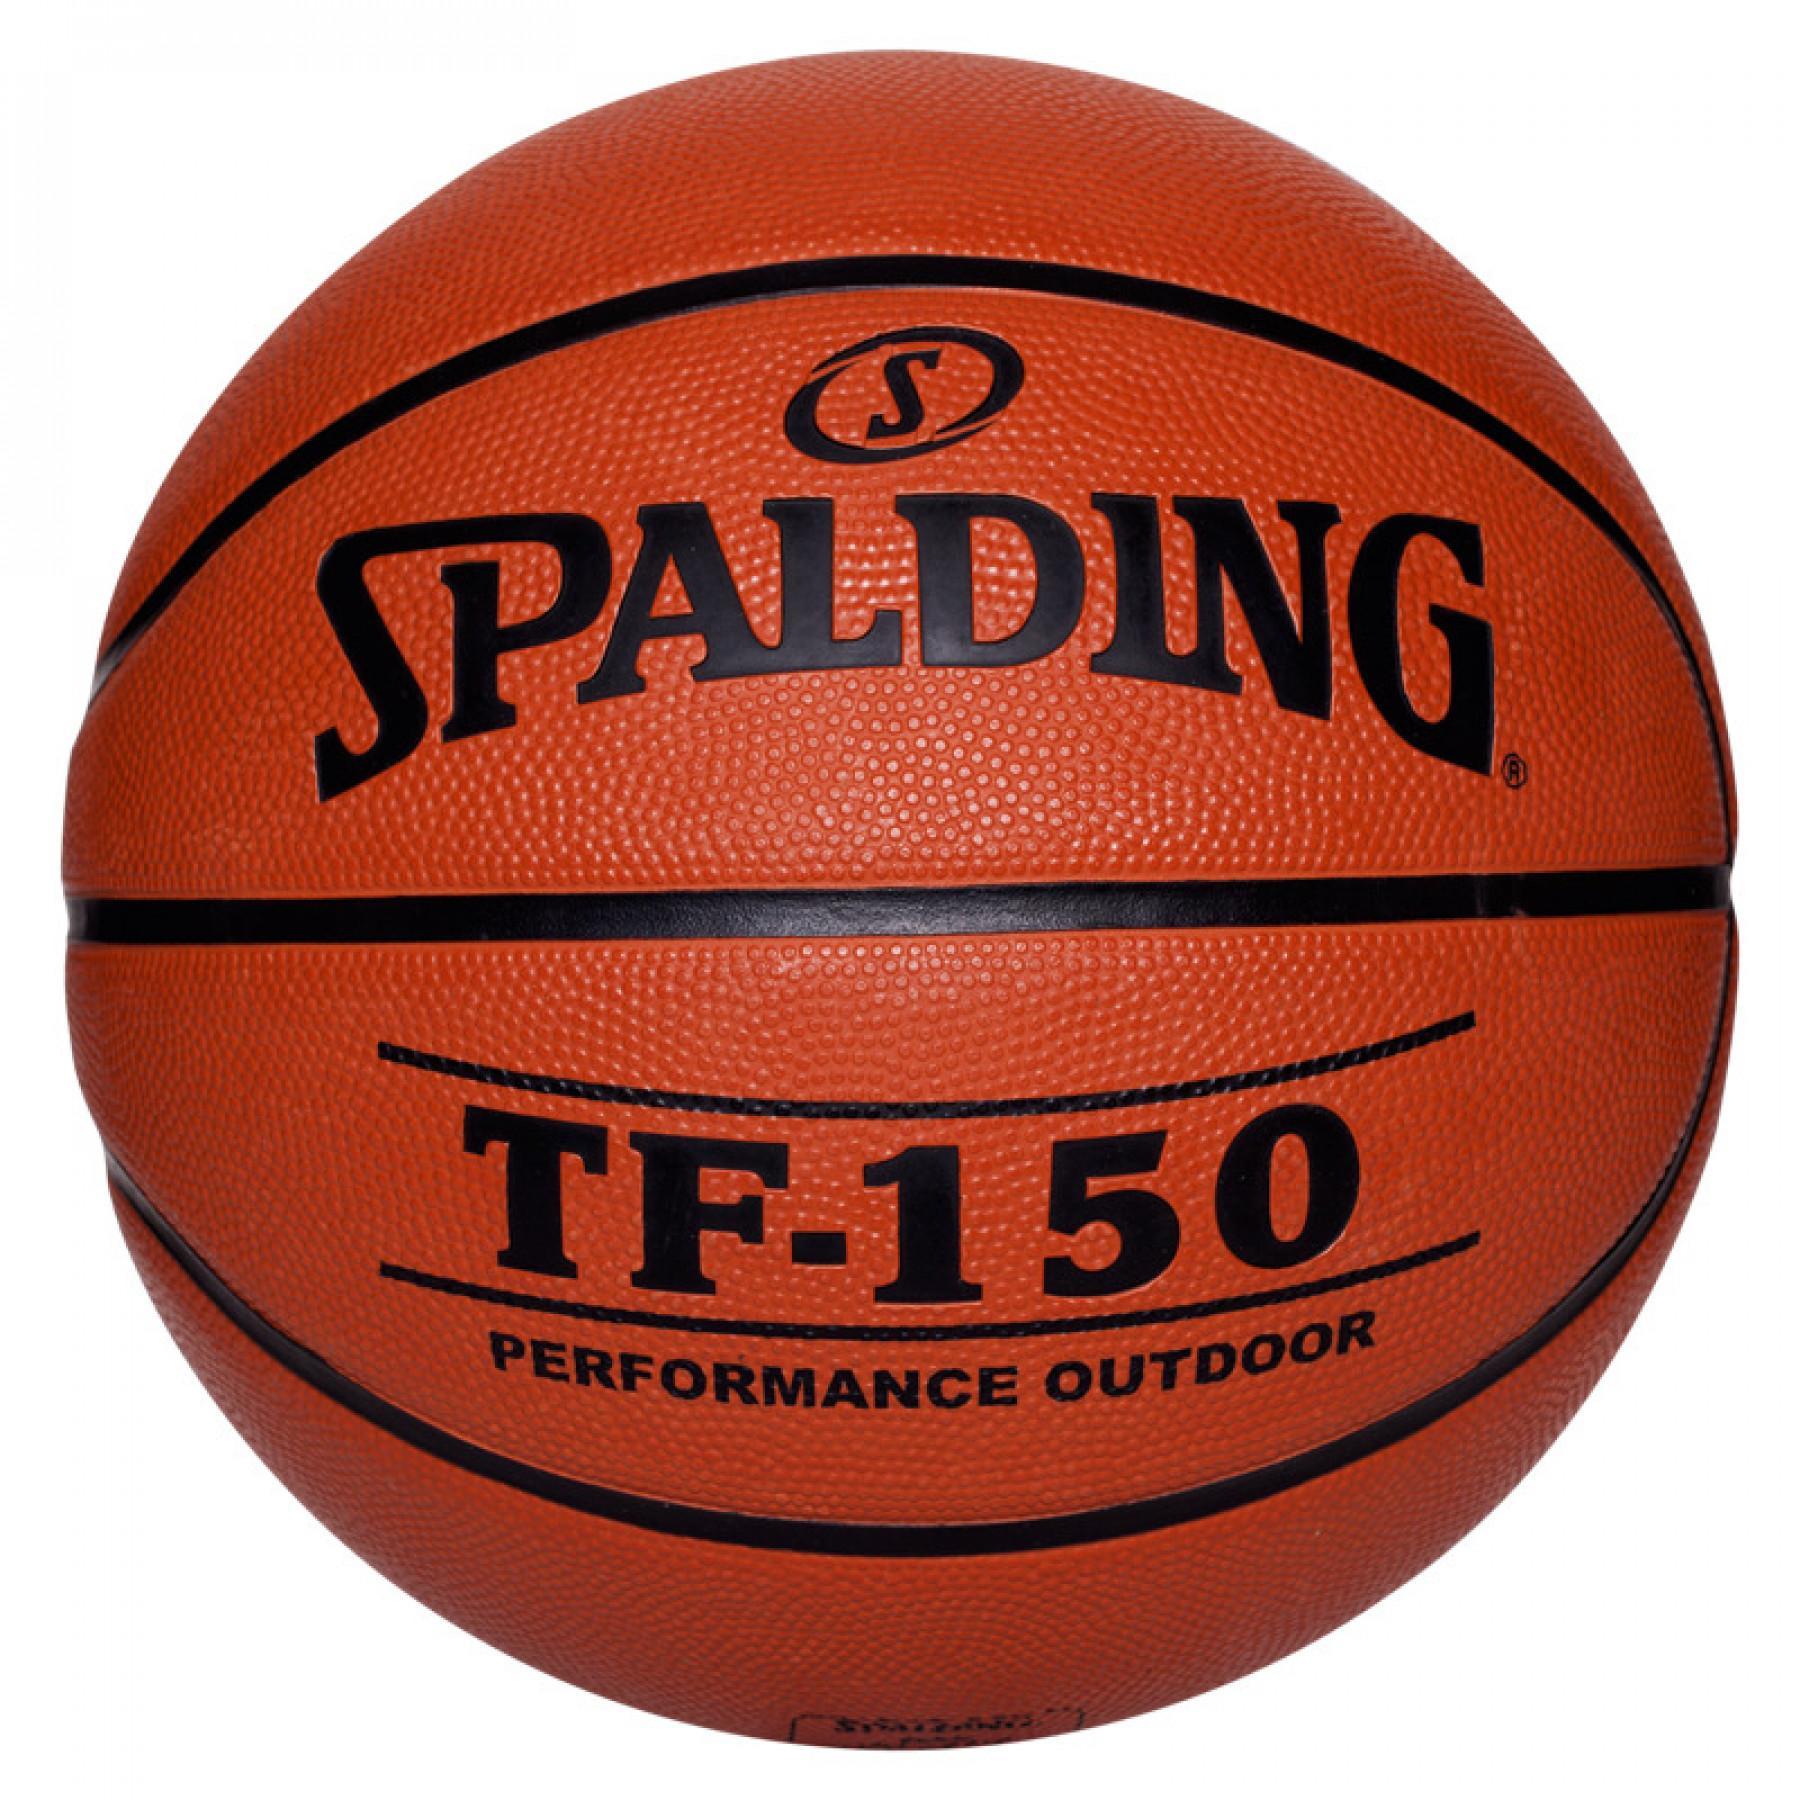 Ballong Spalding Tf150 Outdoor (73-955z)